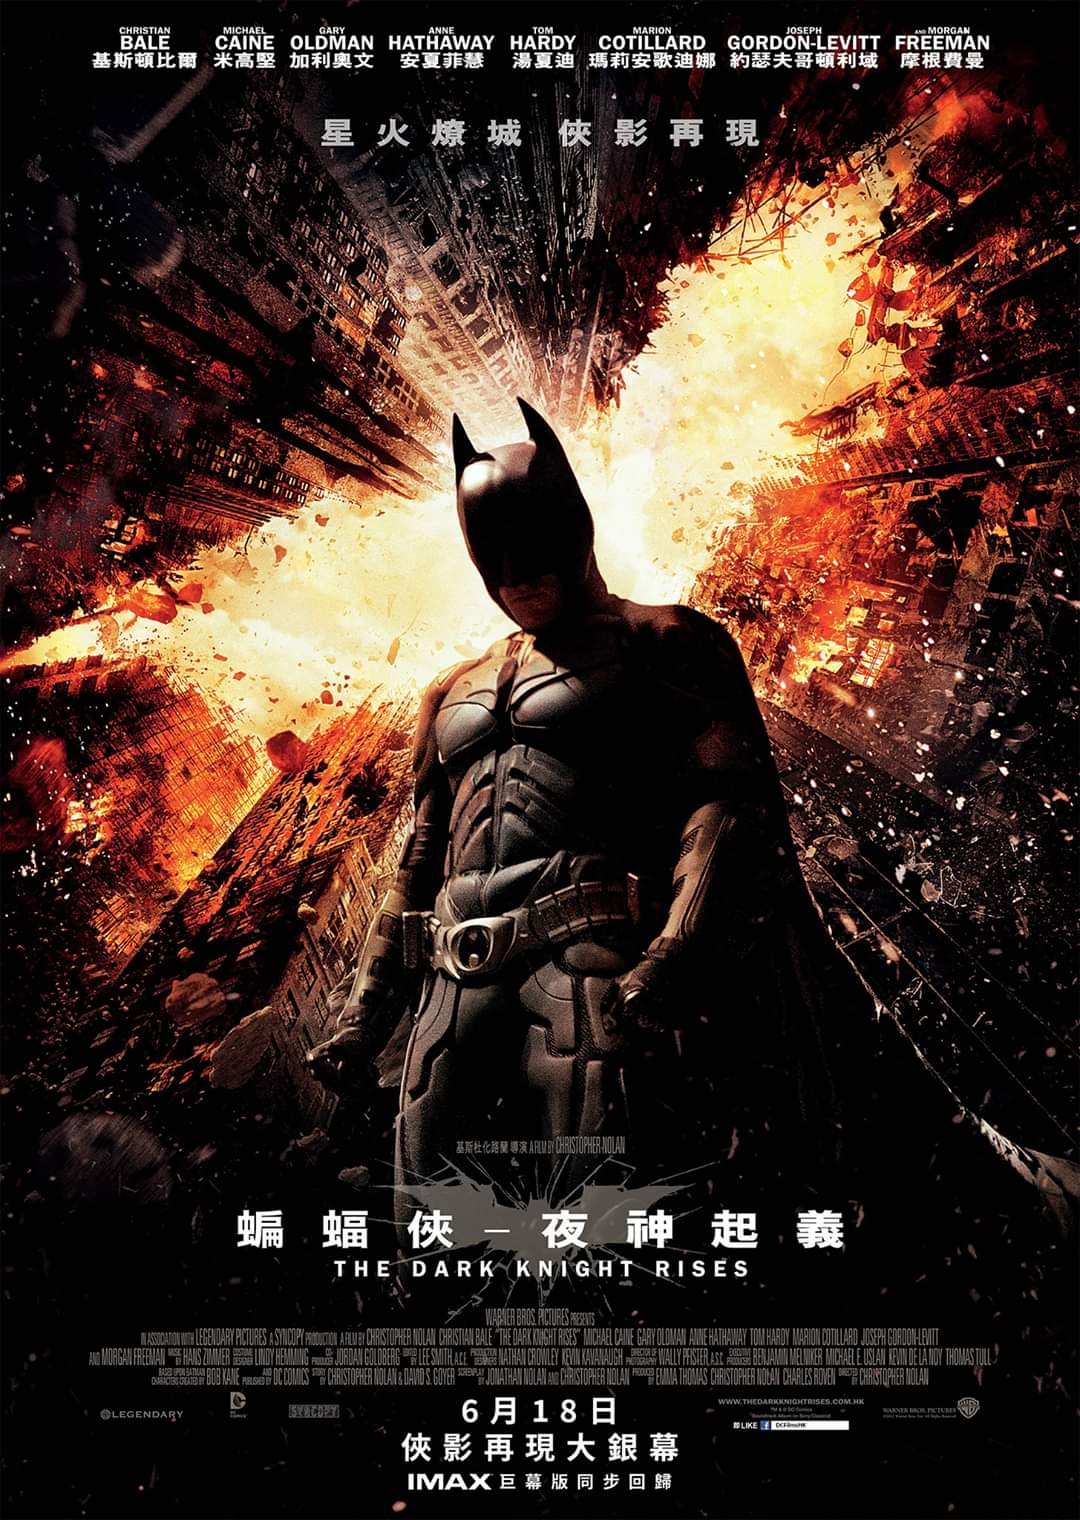 蝙蝠俠 – 夜神起義 (IMAX版)電影圖片 - FB_IMG_1589810542033_1589815837.jpg